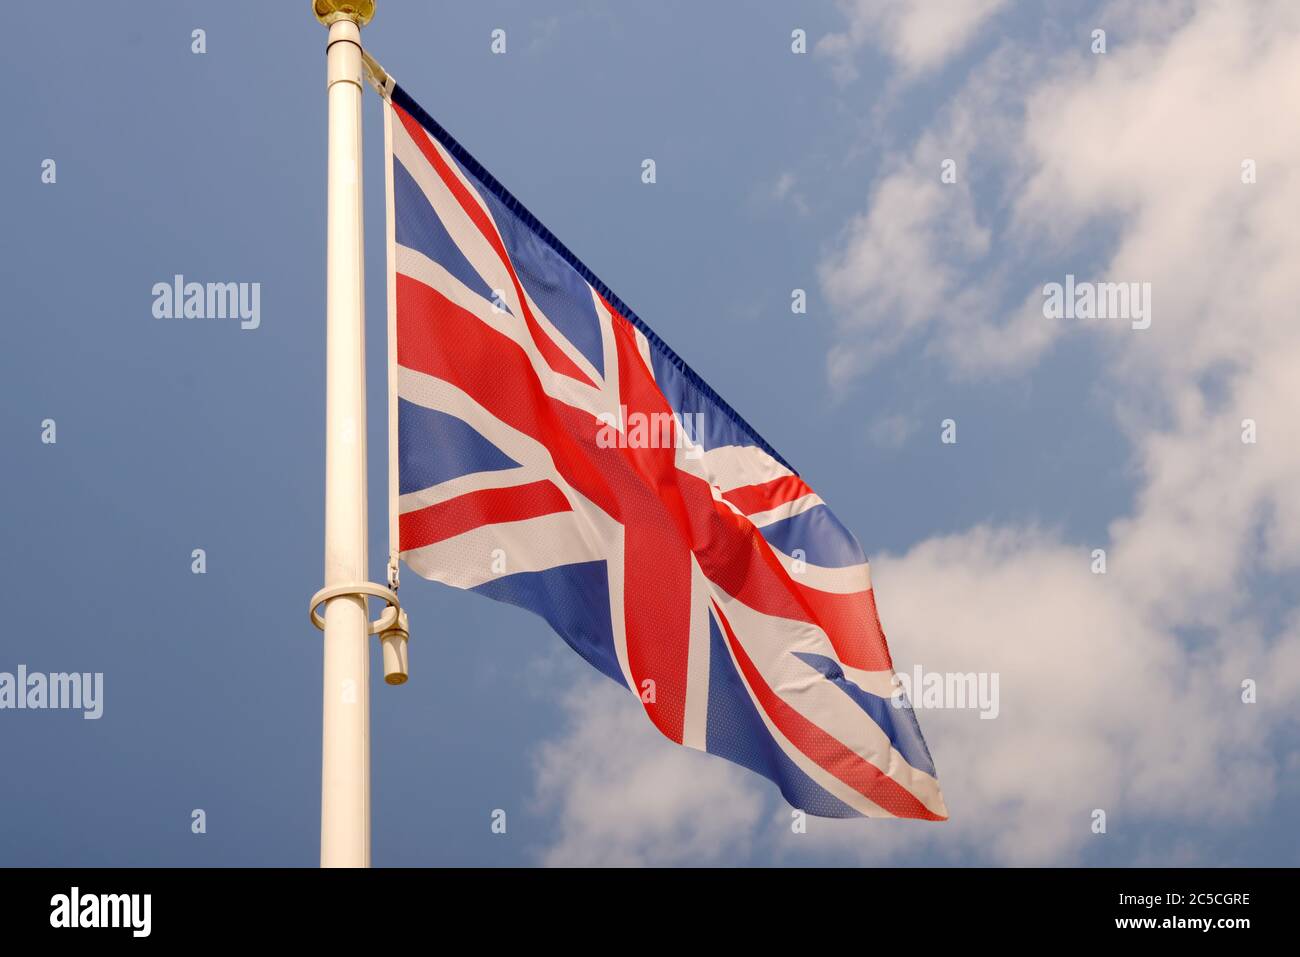 Flagge des Vereinigten Königreichs von Großbritannien und Nordirland Flagge des Vereinigten Königreichs von Großbritannien und Nordirland Stockfoto